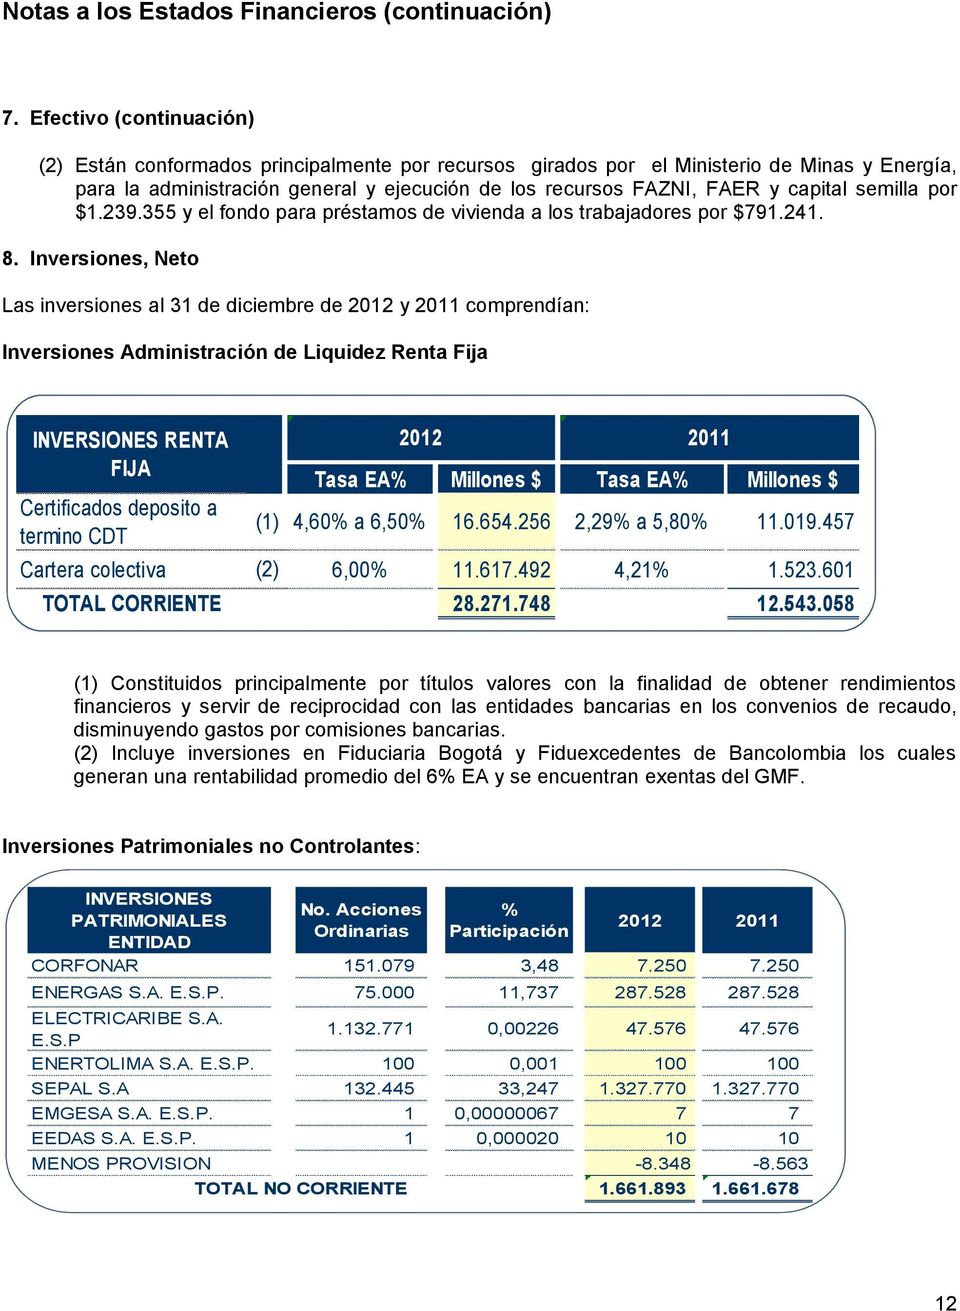 Inversiones, Neto Las inversiones al 31 de diciembre de 2012 y 2011 comprendían: Inversiones Administración de Liquidez Renta Fija INVERSIONES RENTA FIJA Certificados deposito a termino CDT (1) 2012